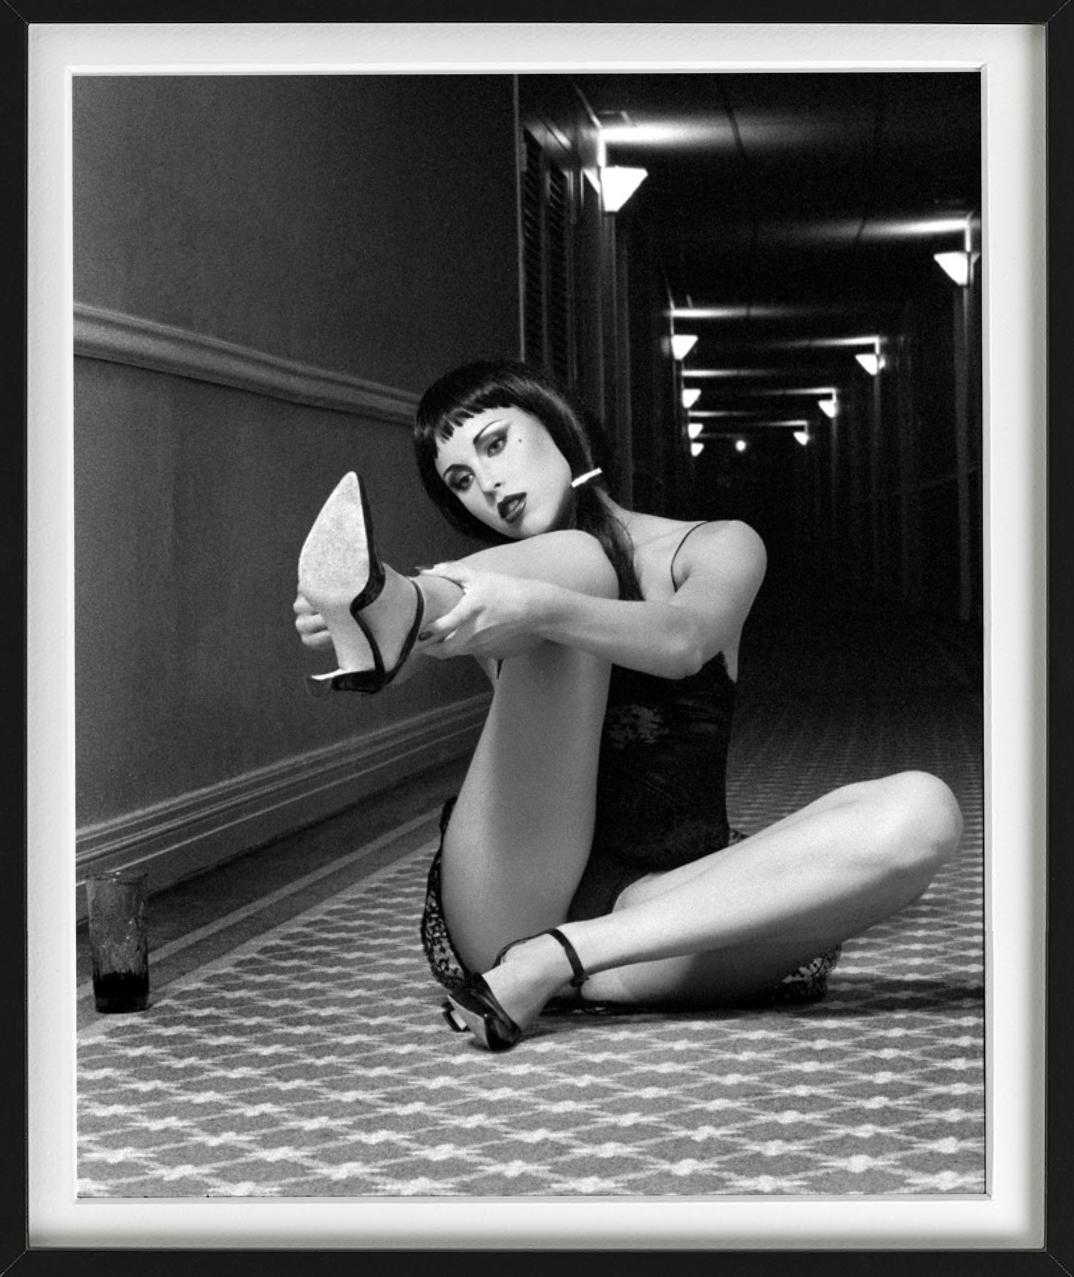 Tove playing with her shoe - portrait cinématographique d'un couple, photographie d'art, 1995 - Photograph de Guido Argentini